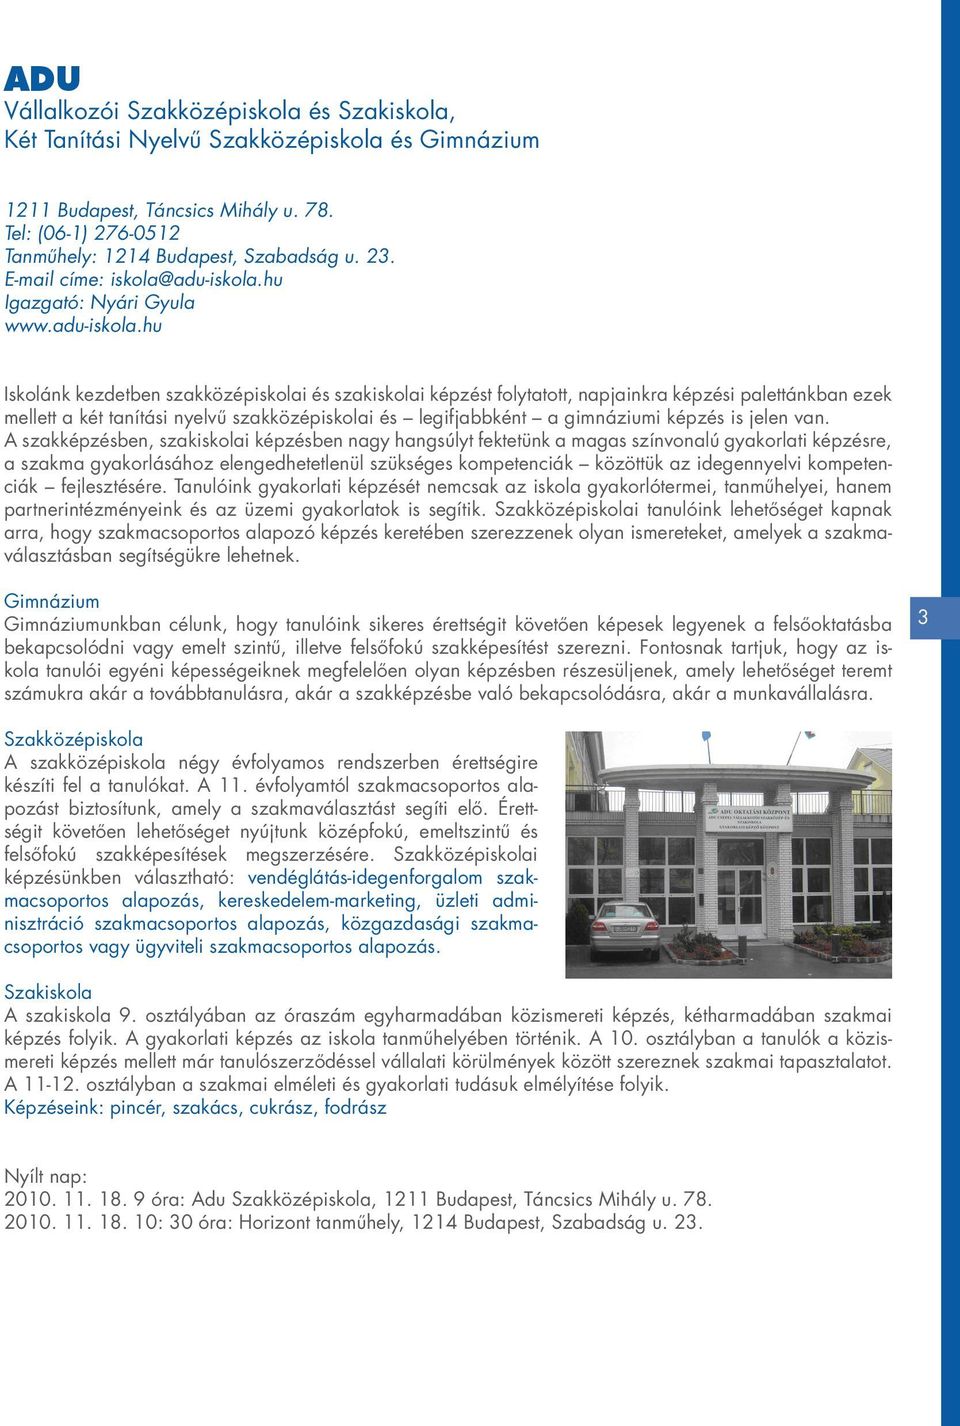 Aktivitás TISZK - Információs füzet - PDF Ingyenes letöltés